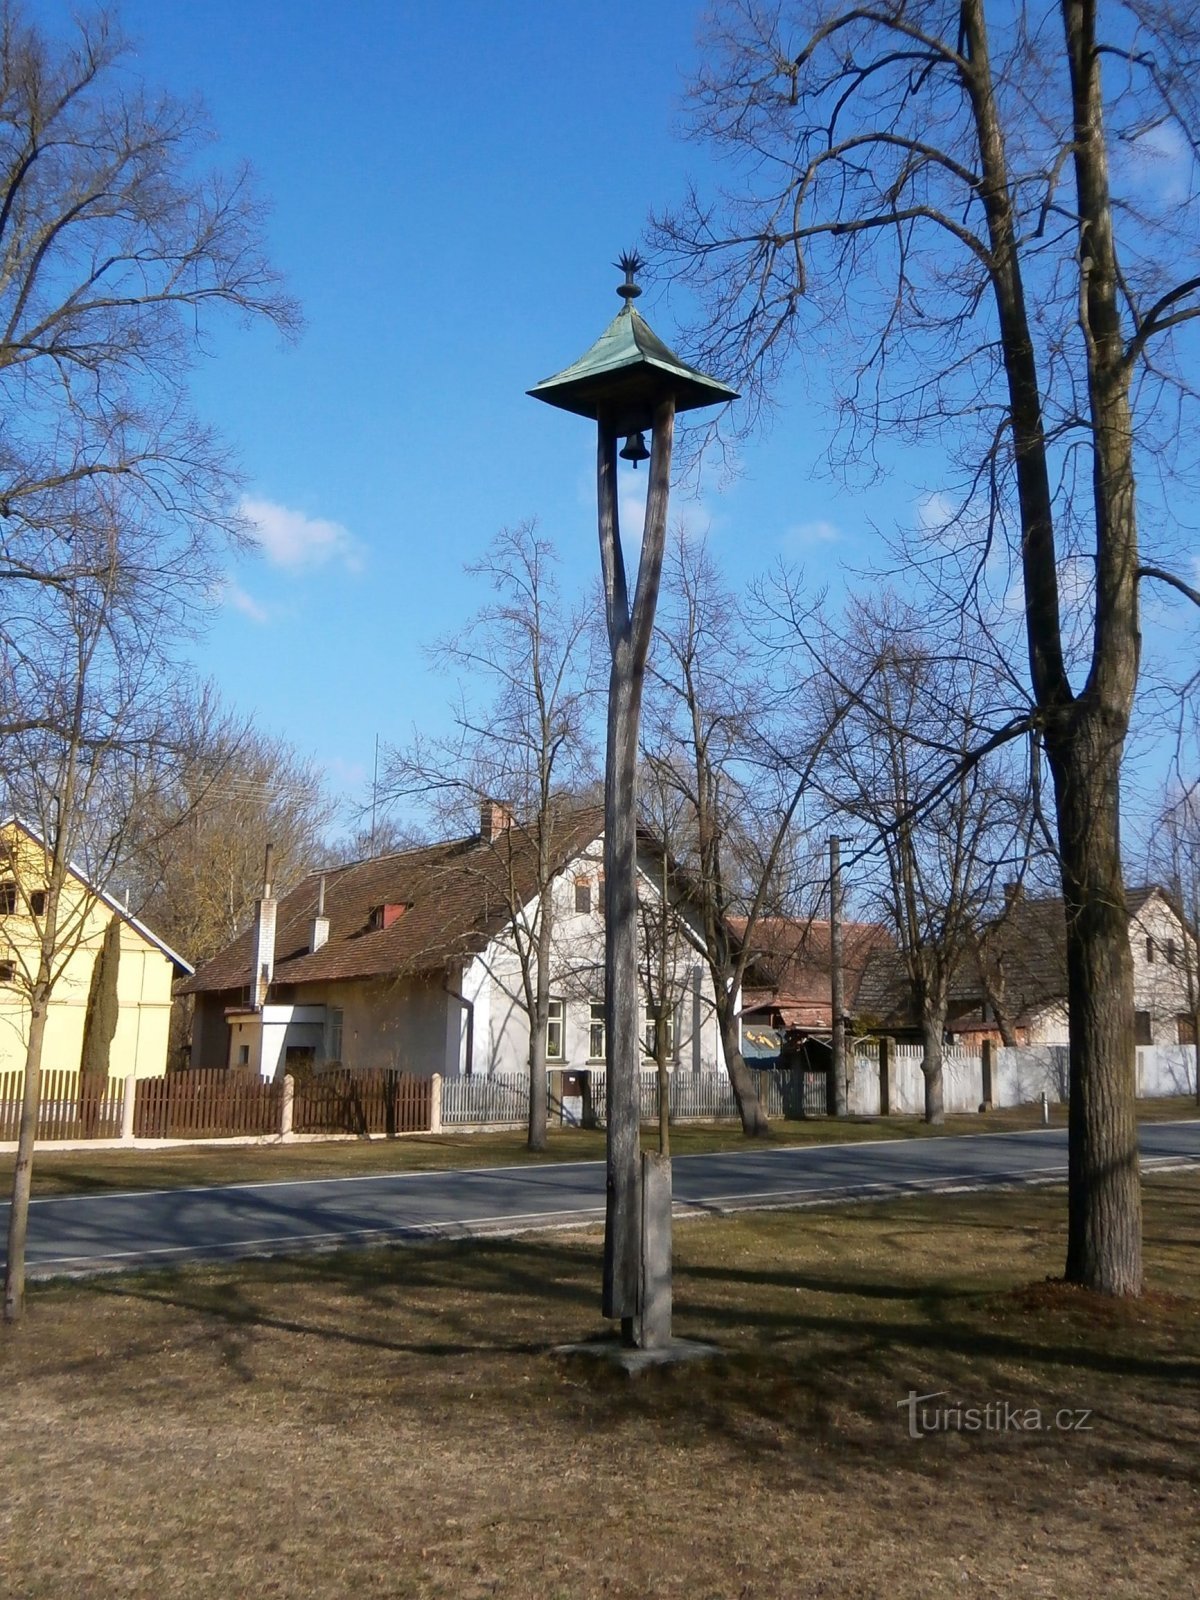 Dzwonnica (Běleč nad Orlicí, 16.3.2017)